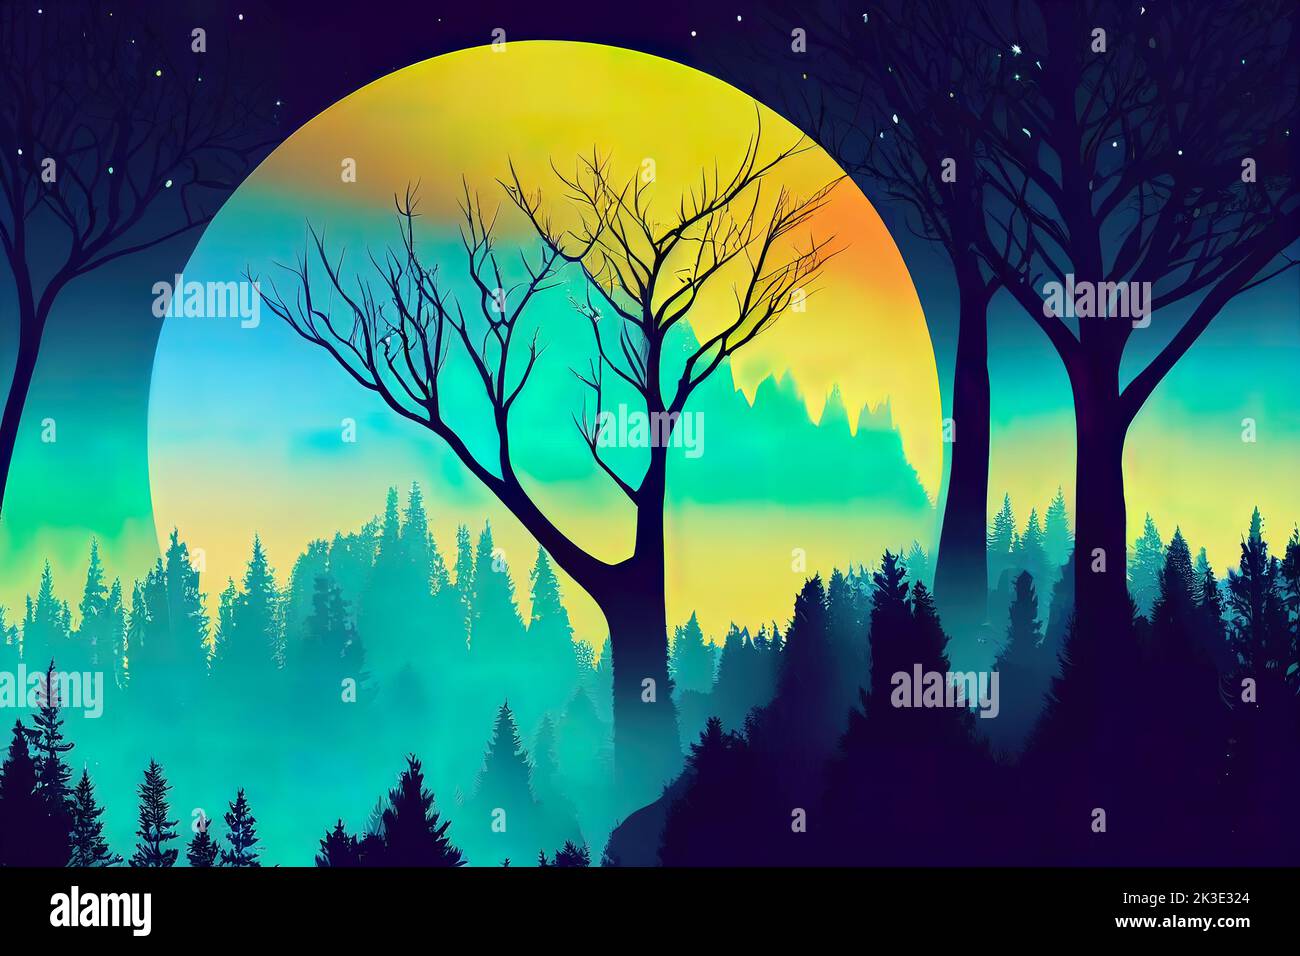 Silueta mística magia paisaje forestal a la luz de la luna. Silueta de  árboles en una ilustración de estilo de dibujos animados. Paisaje  surrealista para fondos de pantalla y ba Fotografía de